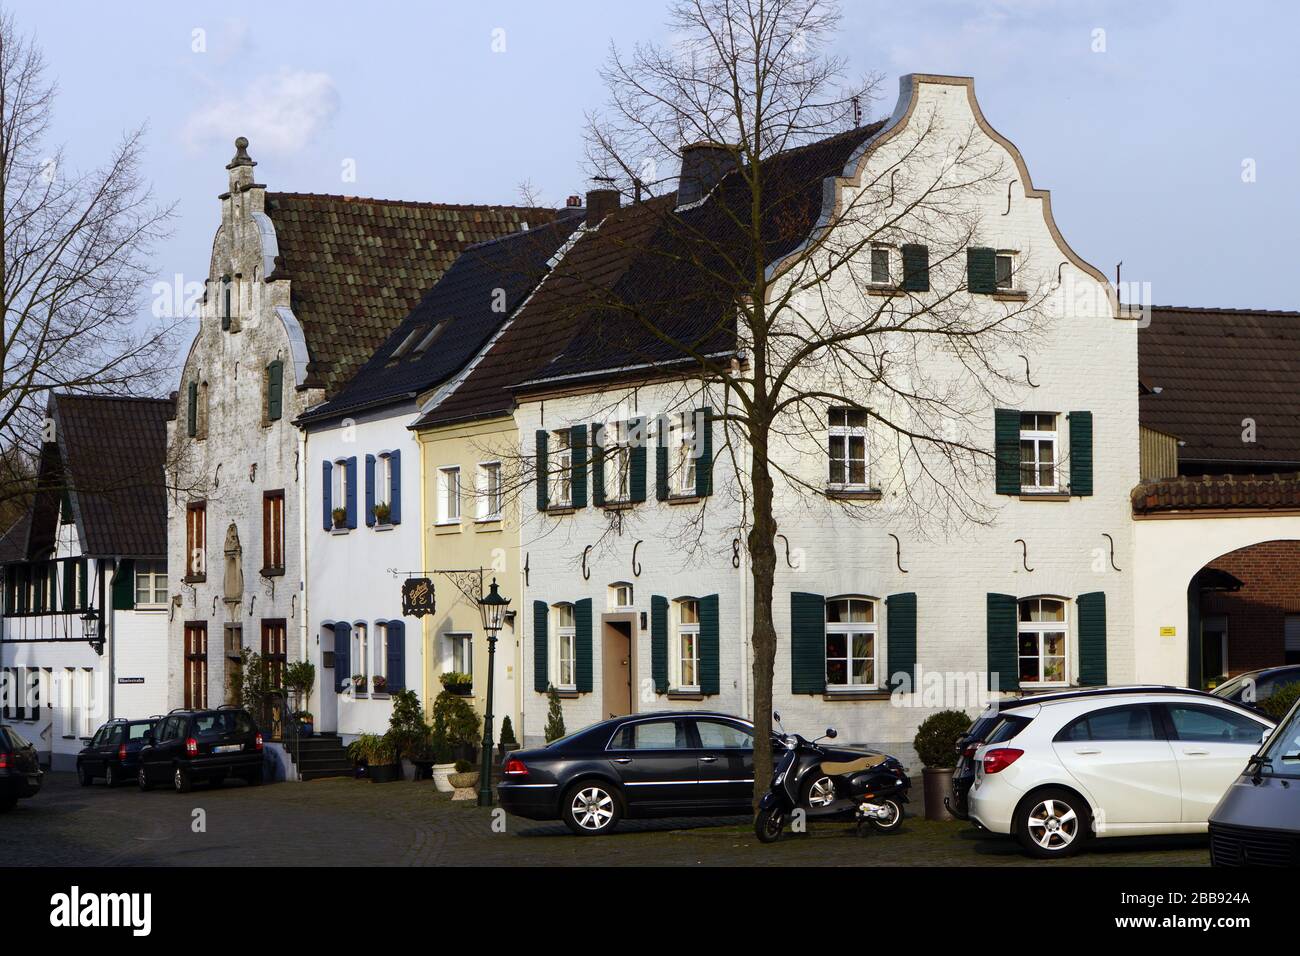 historischer Ortskern von Alt-Kaster, Bedburg, Nordrhein-Westfalen, Deutschland Stock Photo